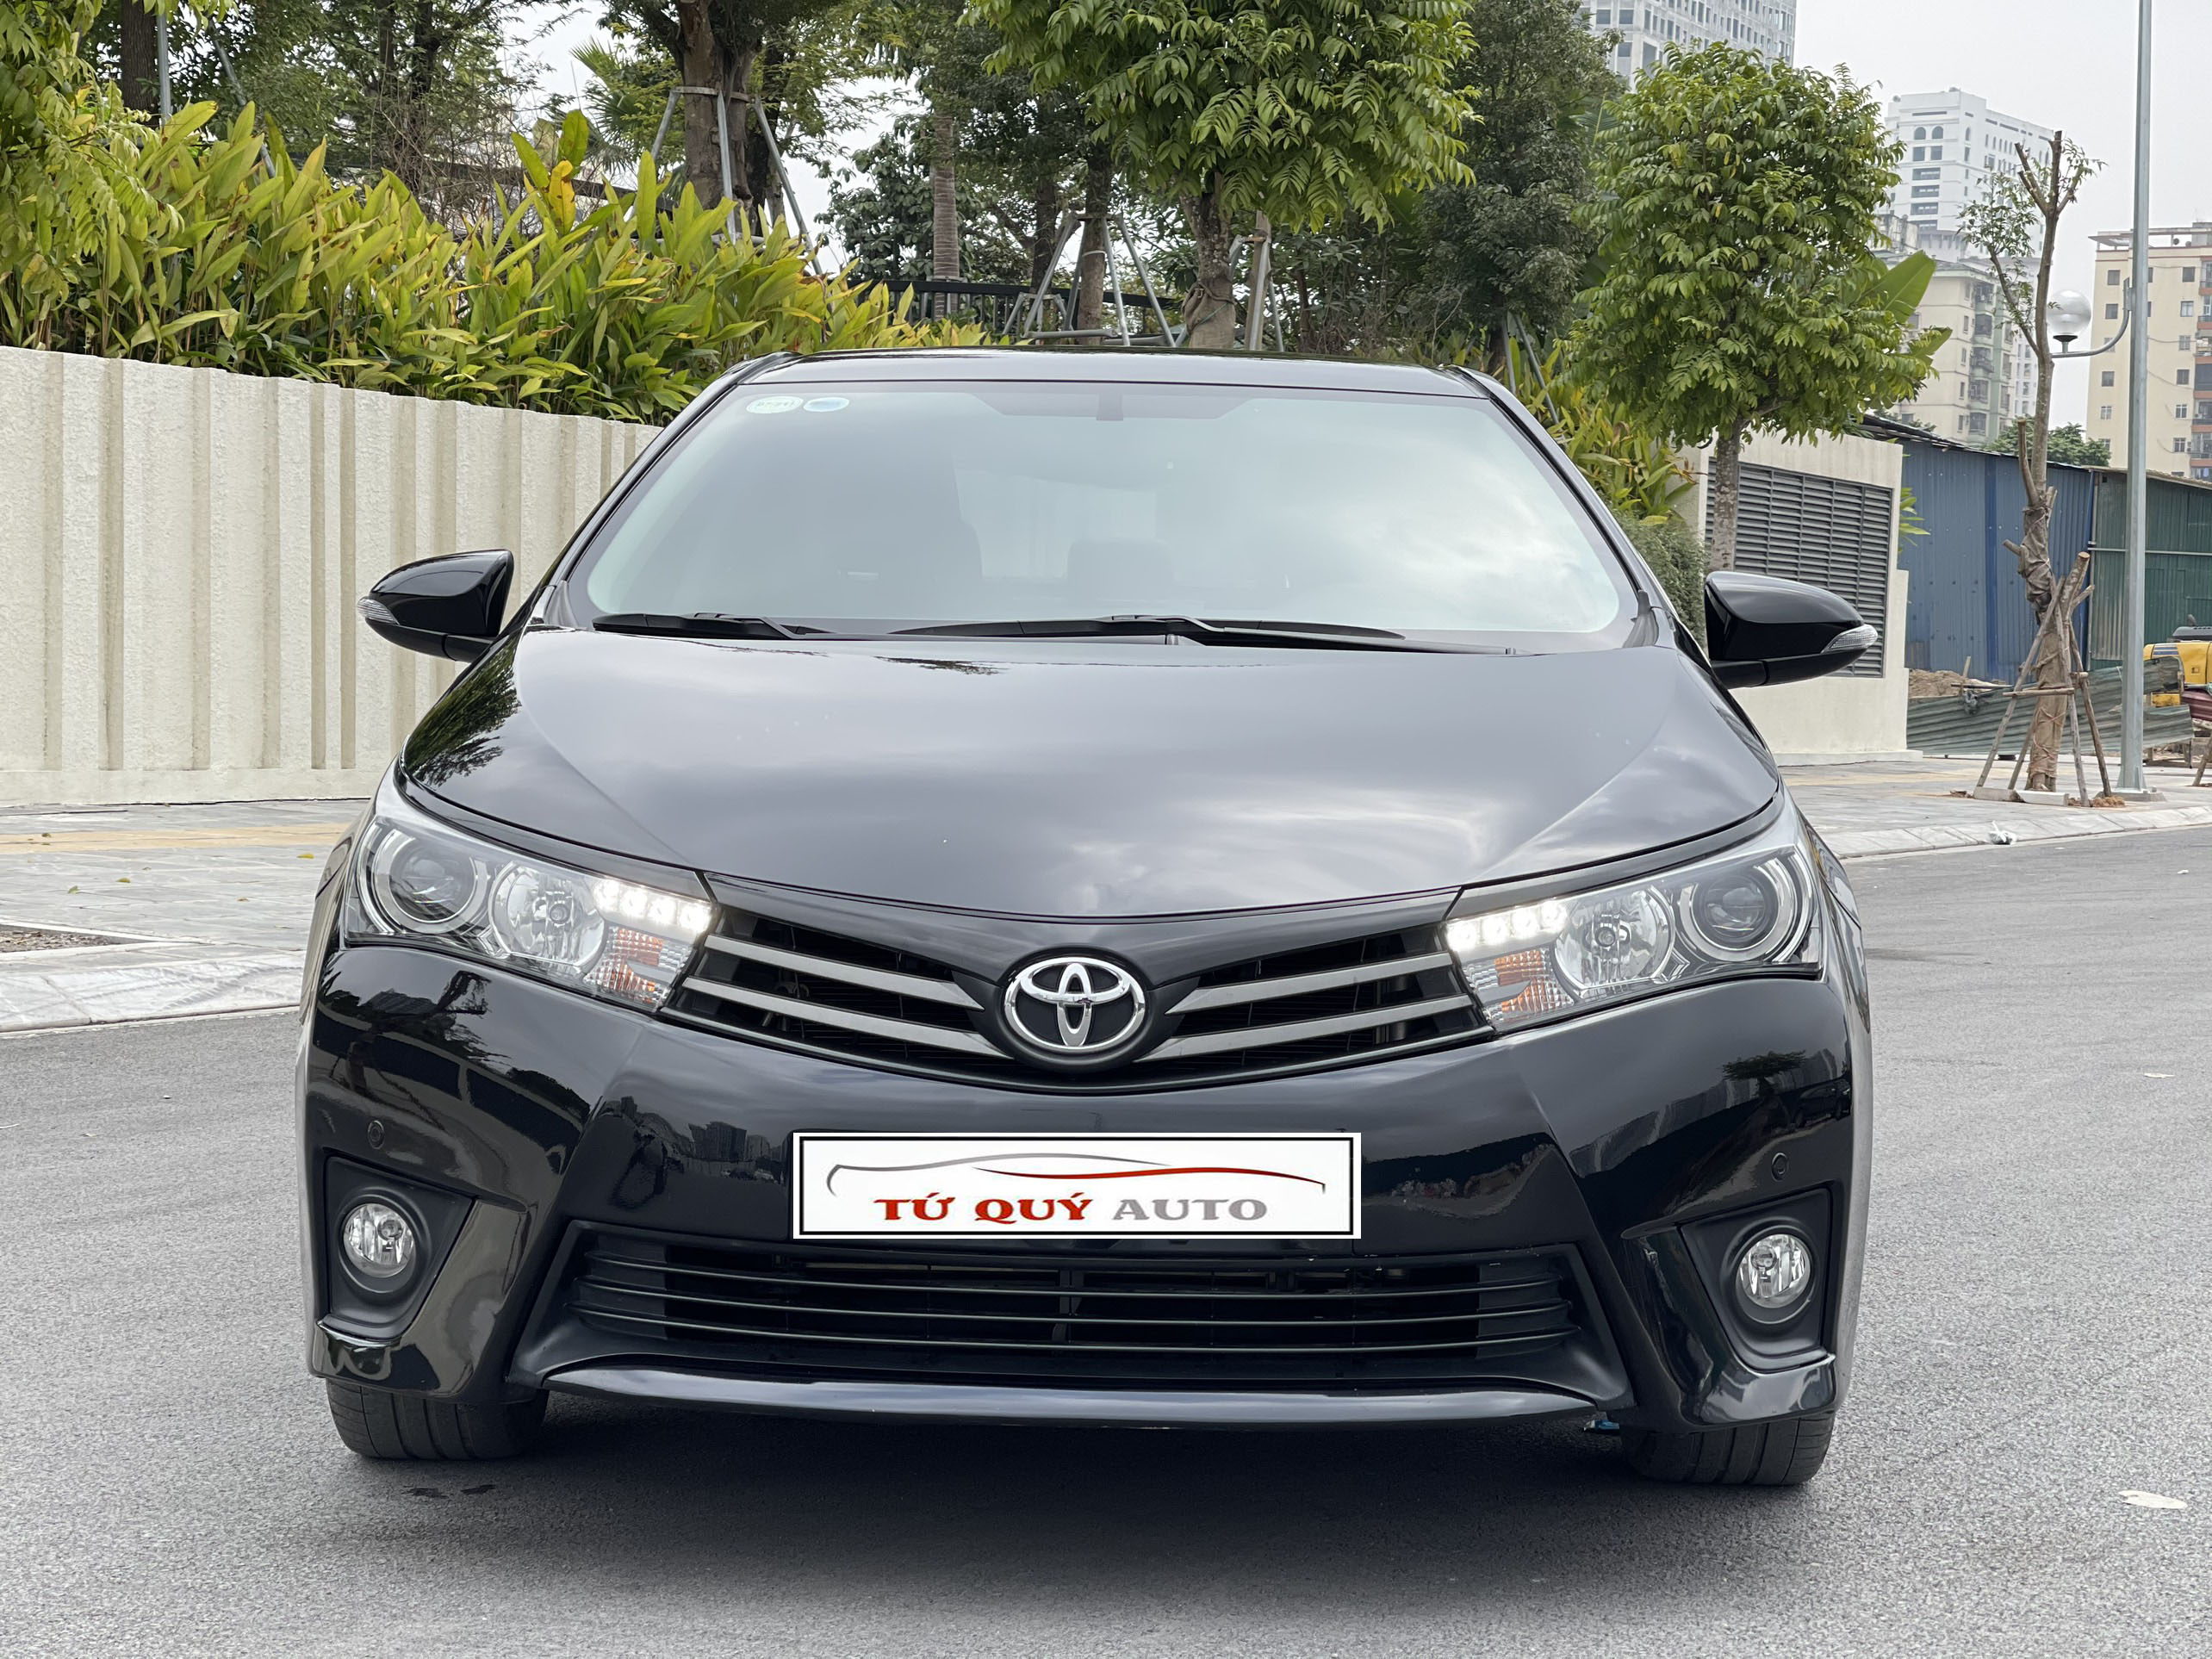 Toyota Corolla Altis 2017 có giá bán chỉ từ 543 triệu VNĐ tại Ấn Độ